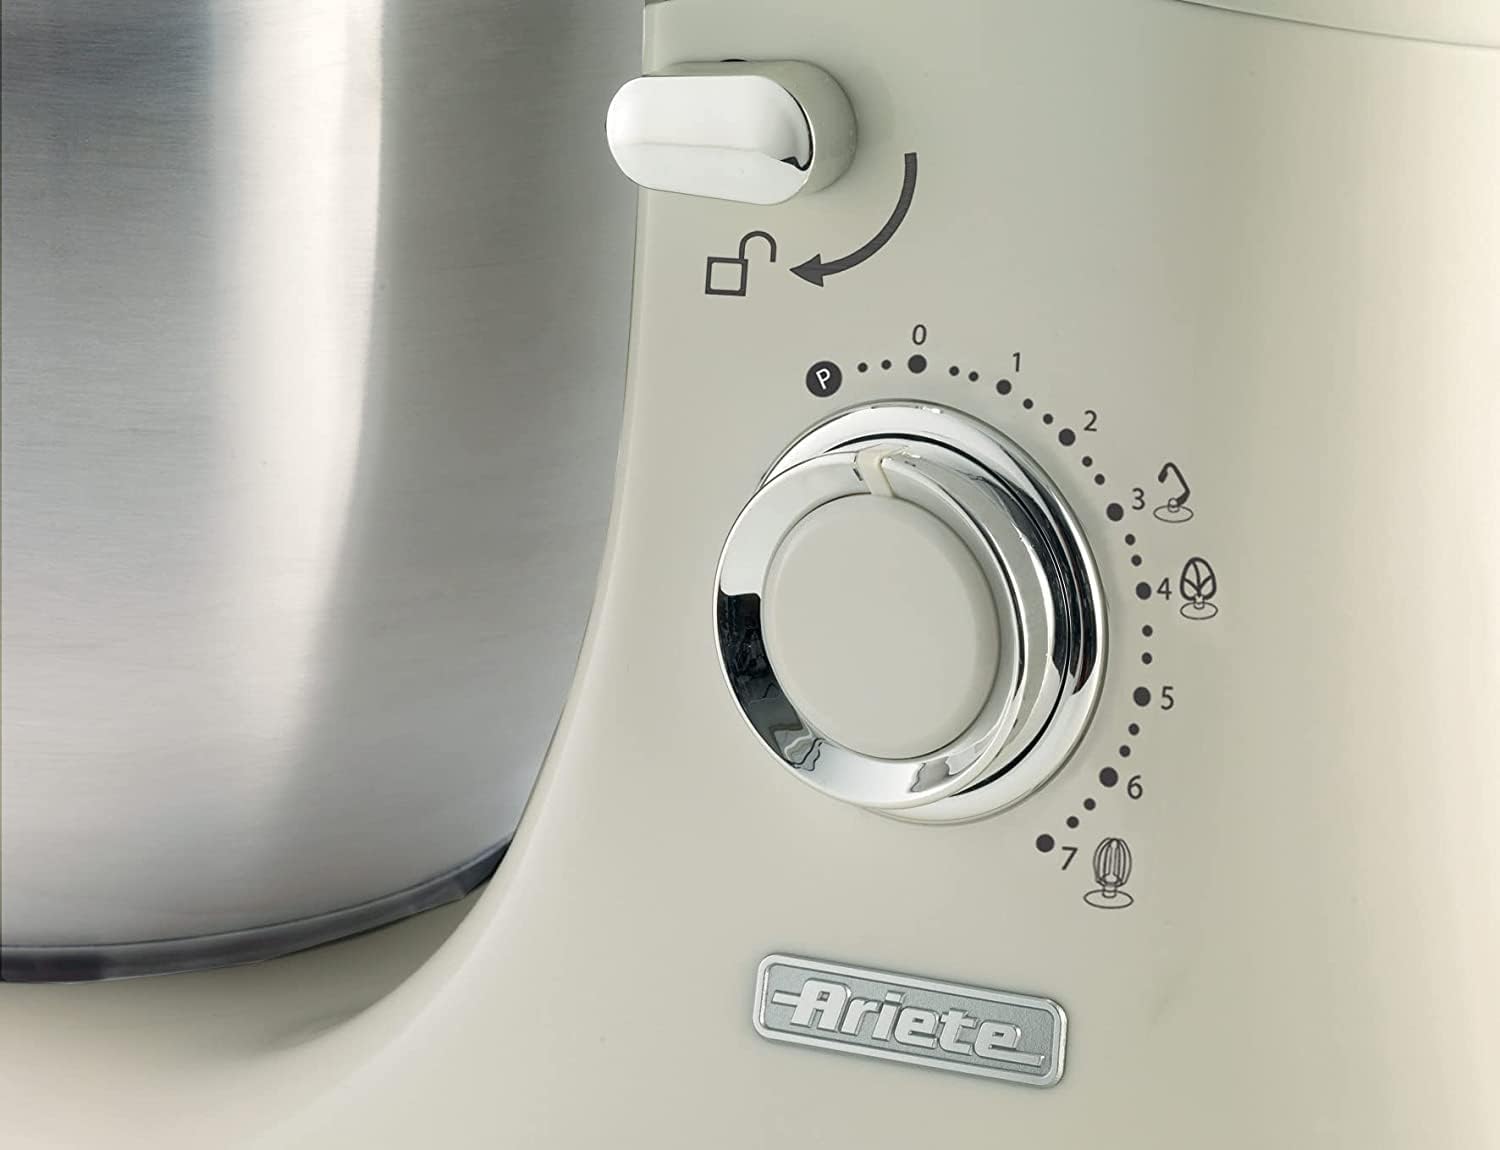 خلاط الطعام من آريتي موديل فينتاج، آلة مطبخ مع وعاء من الفولاذ المقاوم للصدأ سعة 5.5 لتر، قوة 1200 واط، 7 سرعات